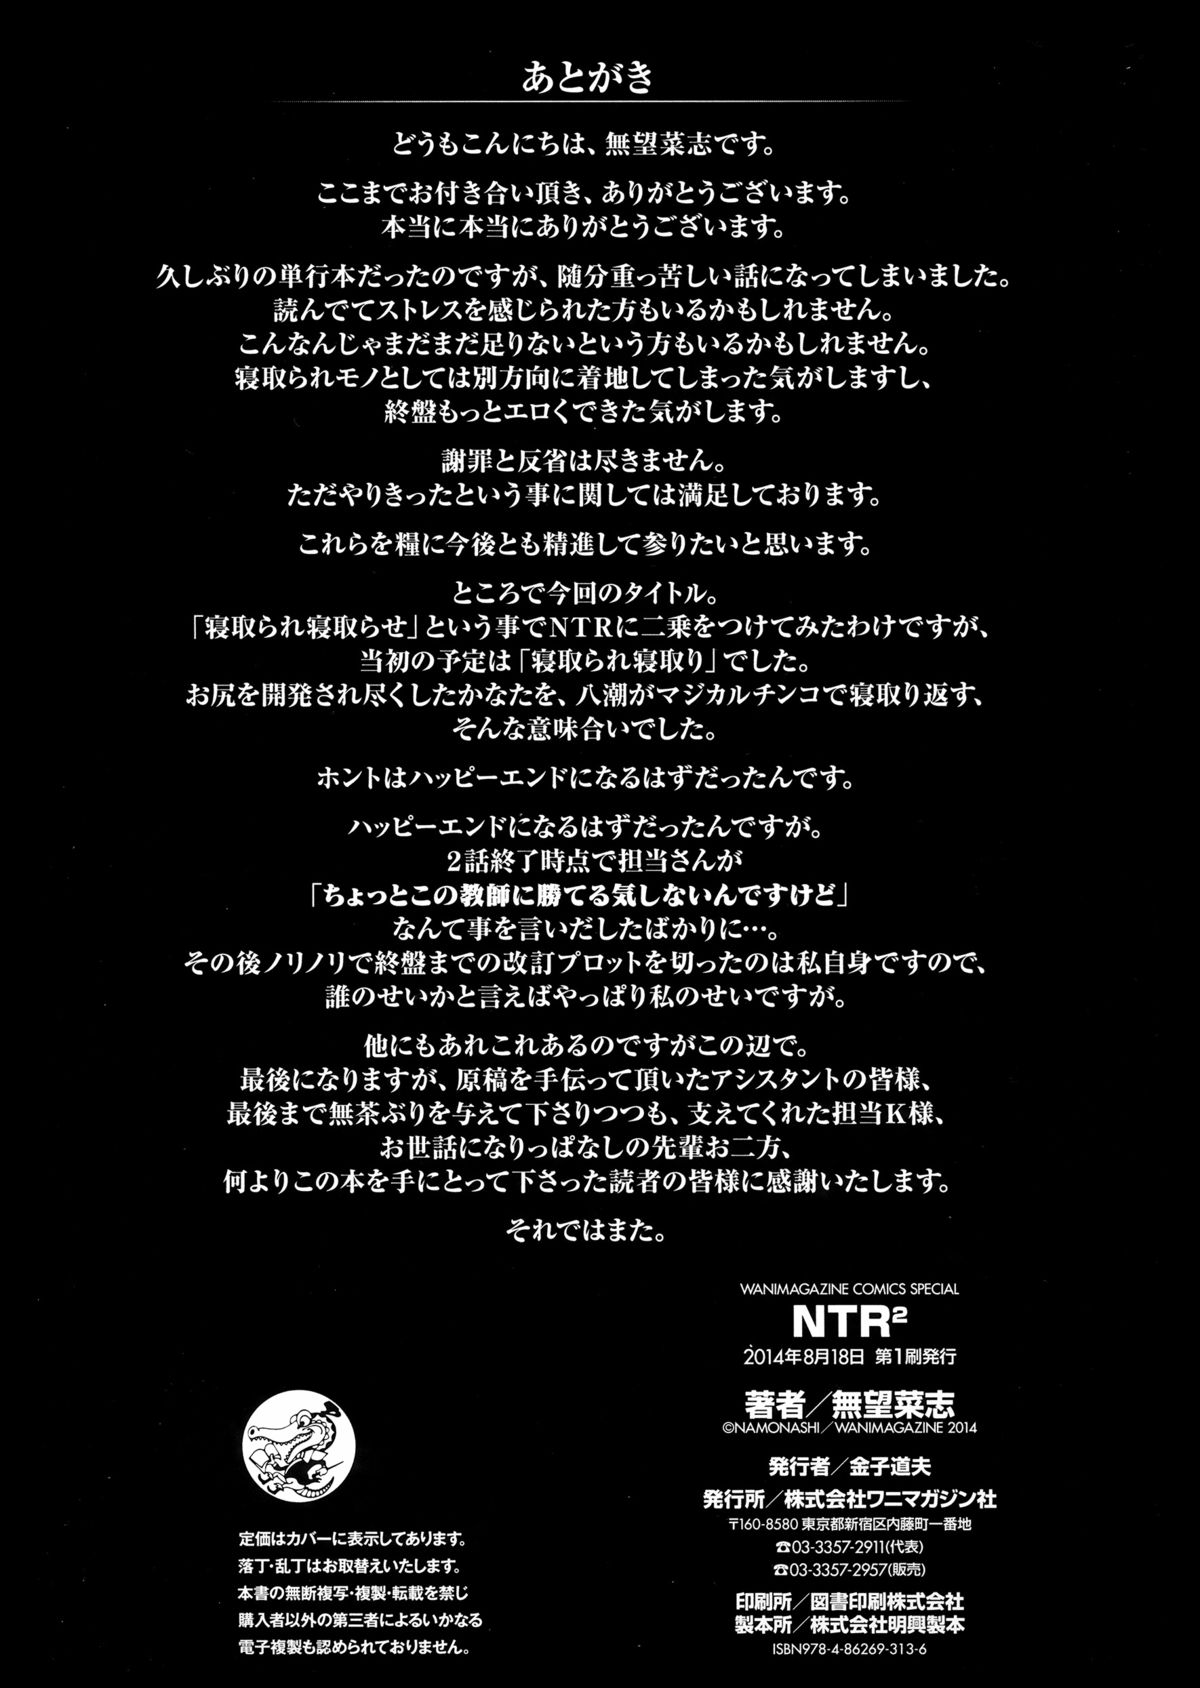 [なもなし]NTR²+とらのあなスペシャルブック+アナザーデイ[英語] {5 a.m}